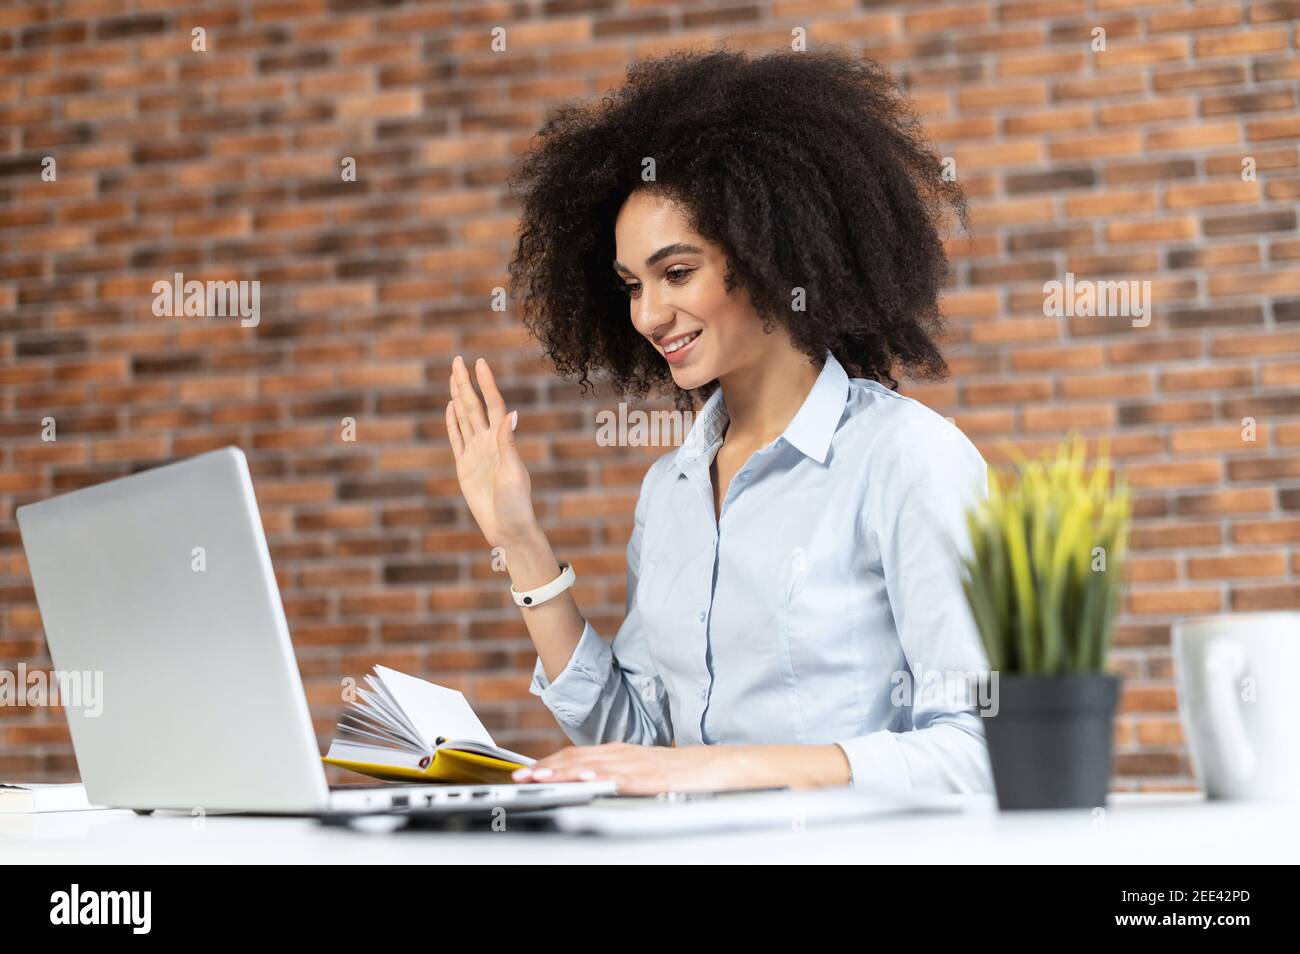 Donna d'affari afroamericana sorridente in abiti casual con capelli afro seduto alla scrivania, studiare o lavorare online, avendo una riunione virtuale Foto Stock